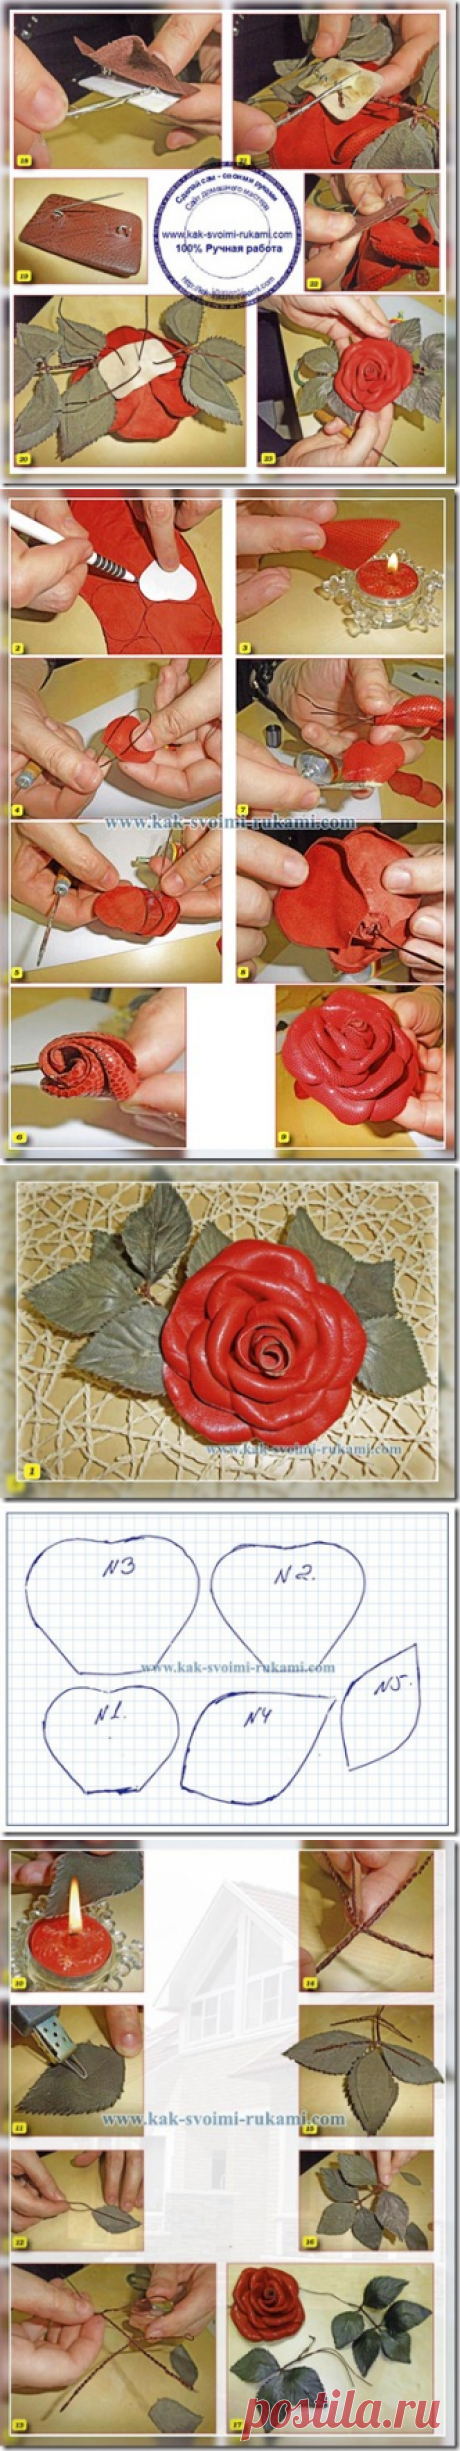 Как сделать розу своими руками из кожи и лоскутов (фото) | Своими руками - Как сделать самому